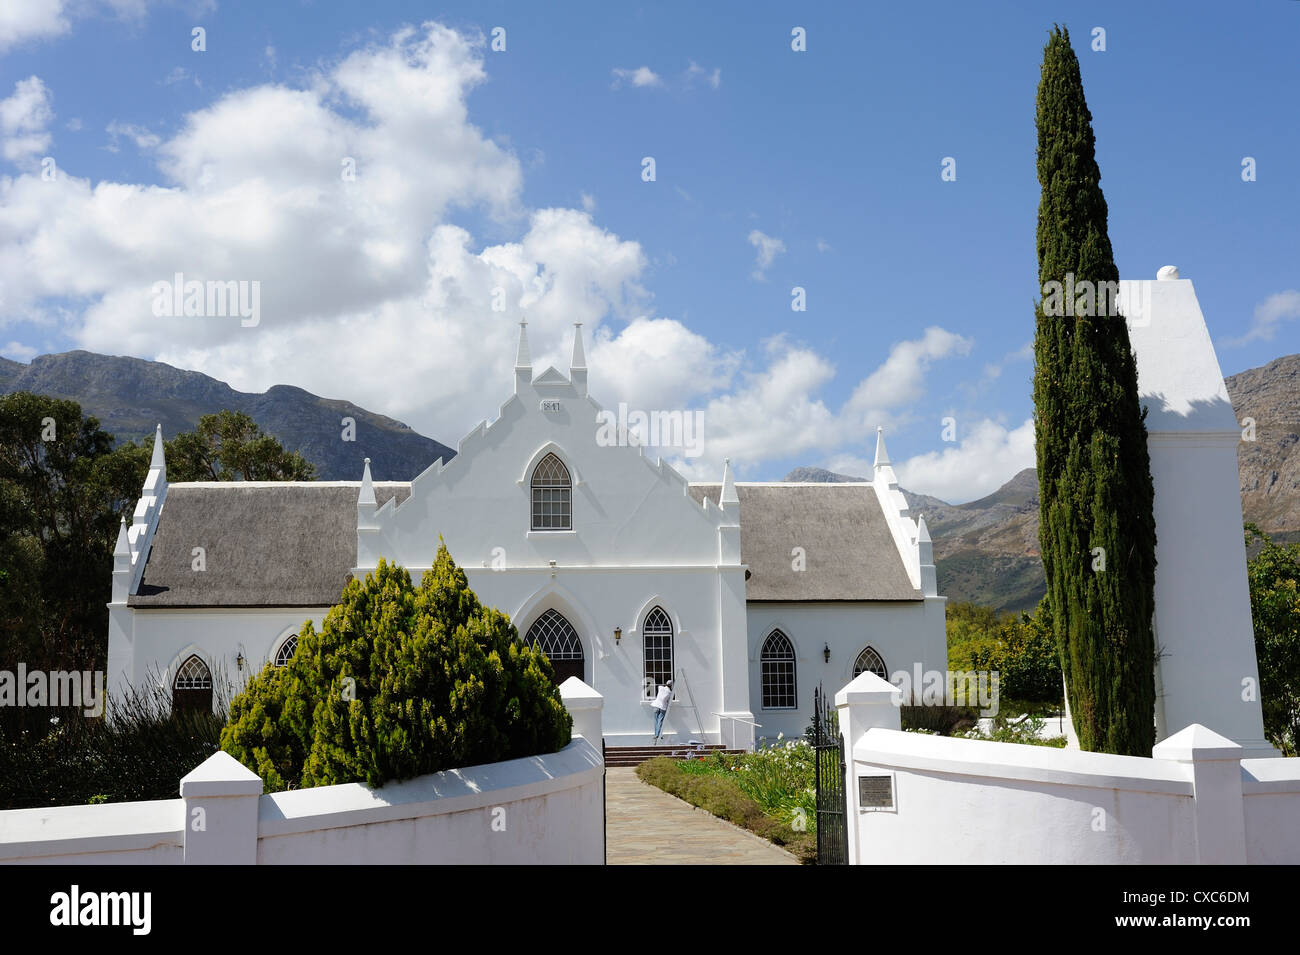 Église réformée hollandaise de 1841, Franschhoek, La Route des Vins, dans la province du Cap, Afrique du Sud, l'Afrique Banque D'Images